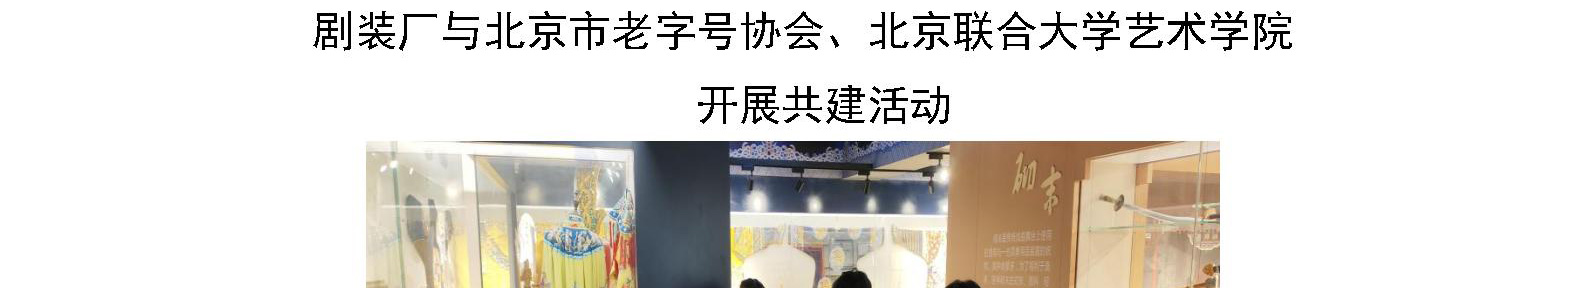 剧装厂与北京市老字号协会、北京联合大学艺术学院 开展共建活动